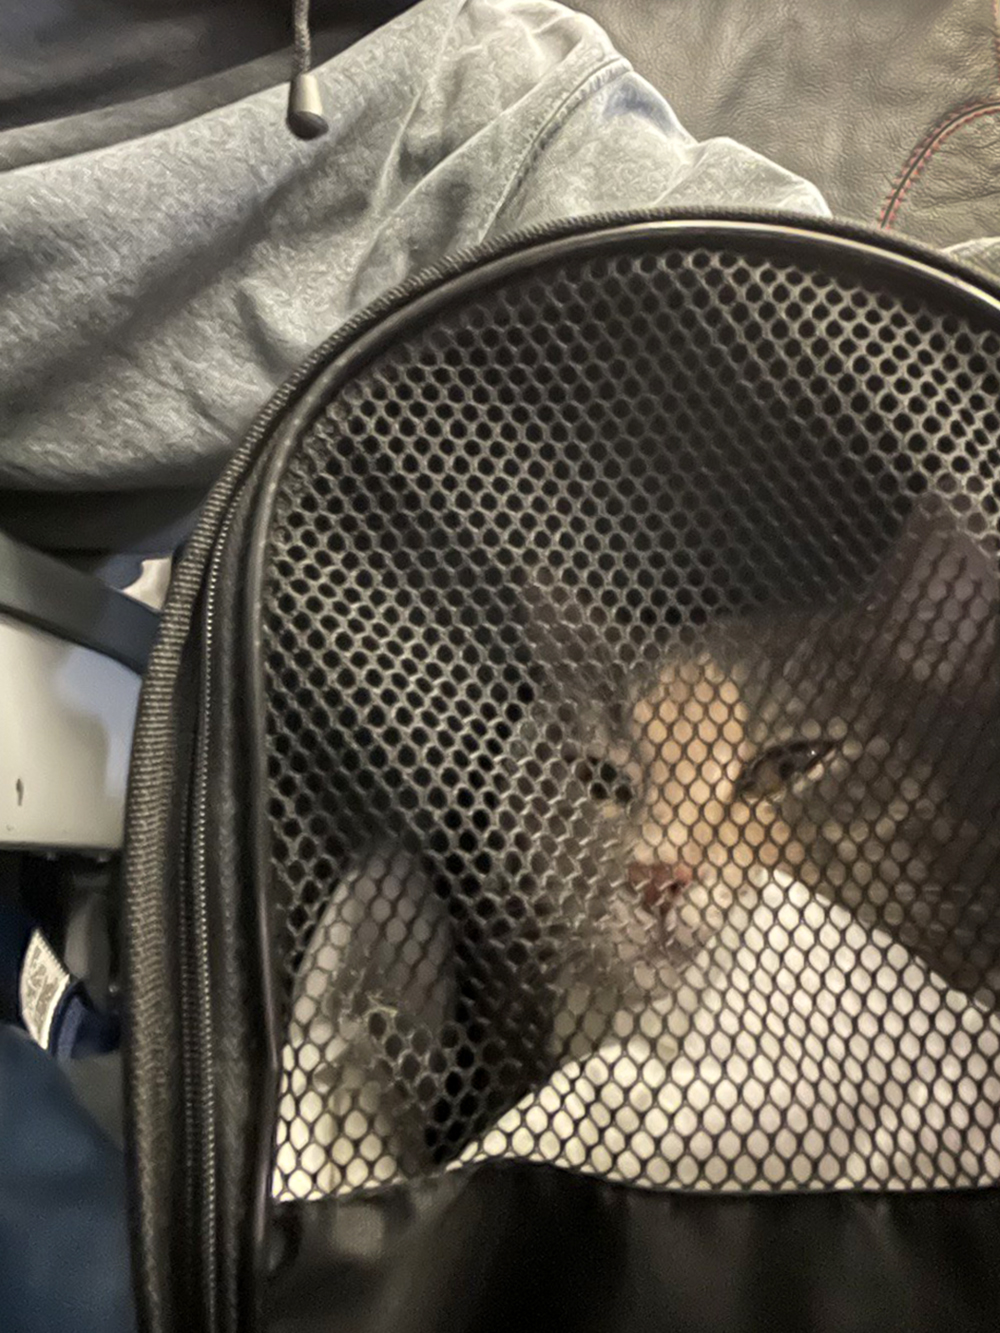 Первые часы в аэропорту и самолете кошка была спокойна благодаря выпитому лекарству. Потом с интересом наблюдала за окружающим миром